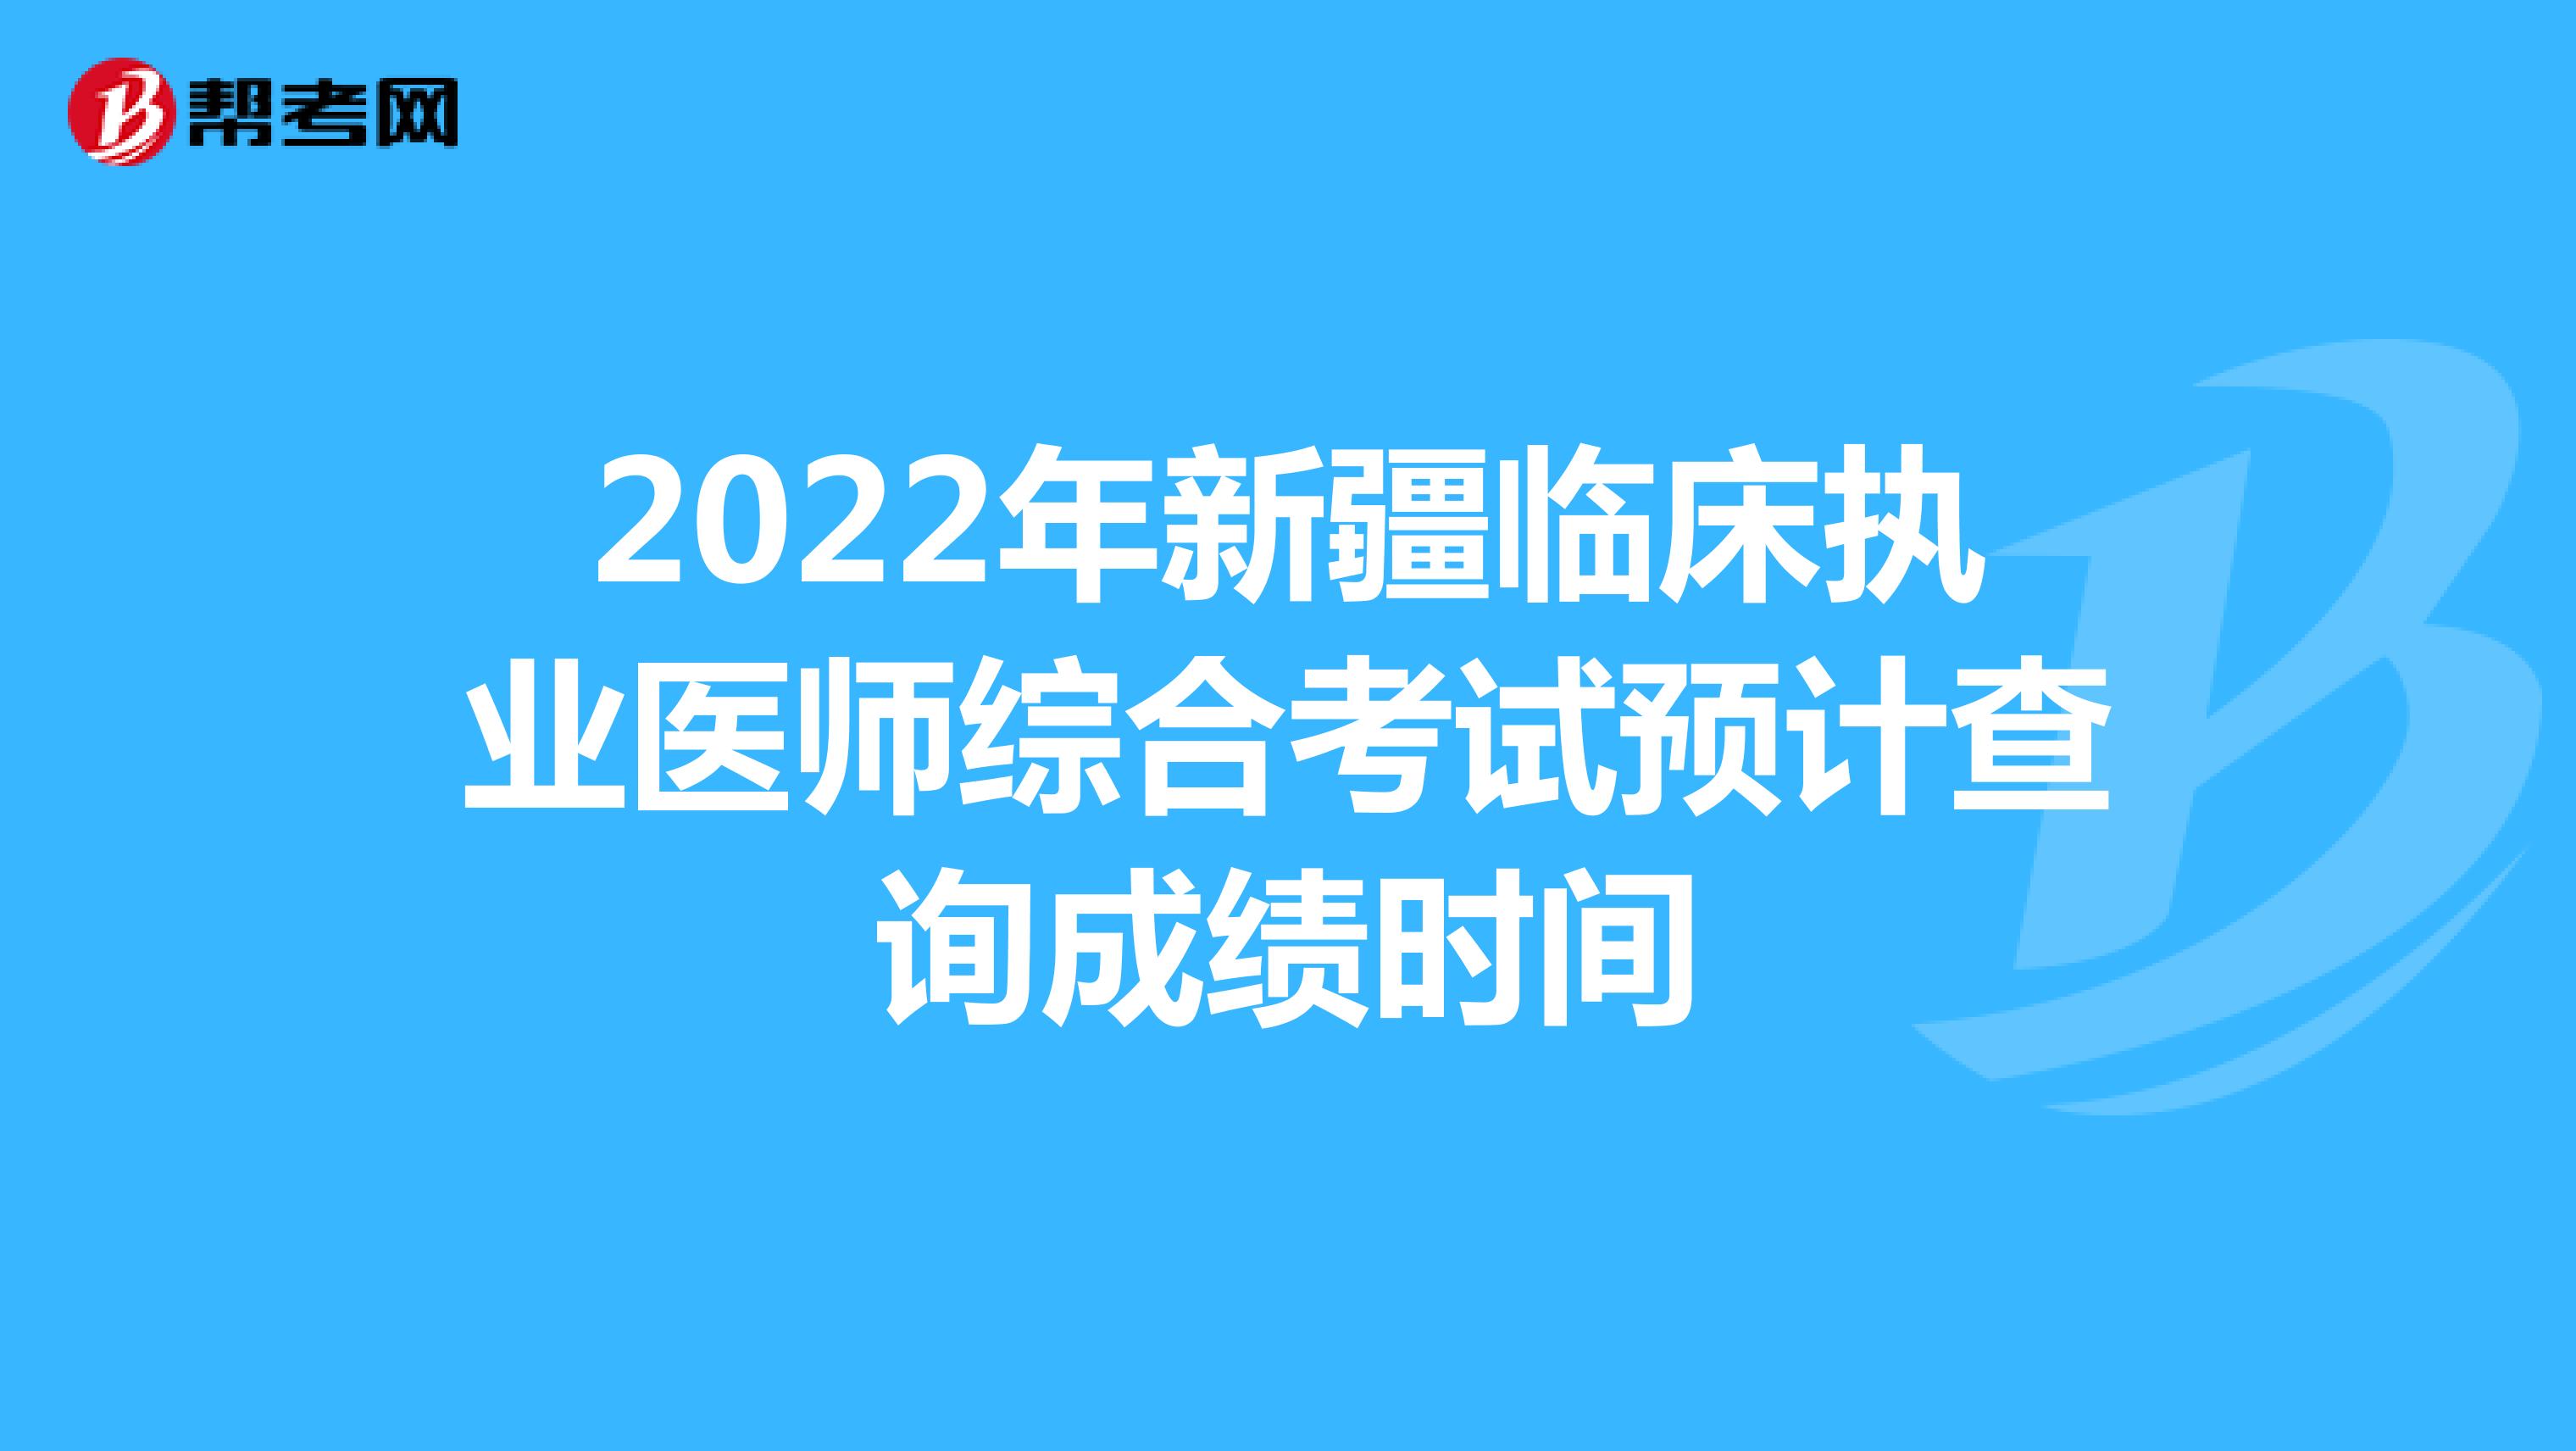 2022年新疆临床执业医师综合考试预计查询成绩时间